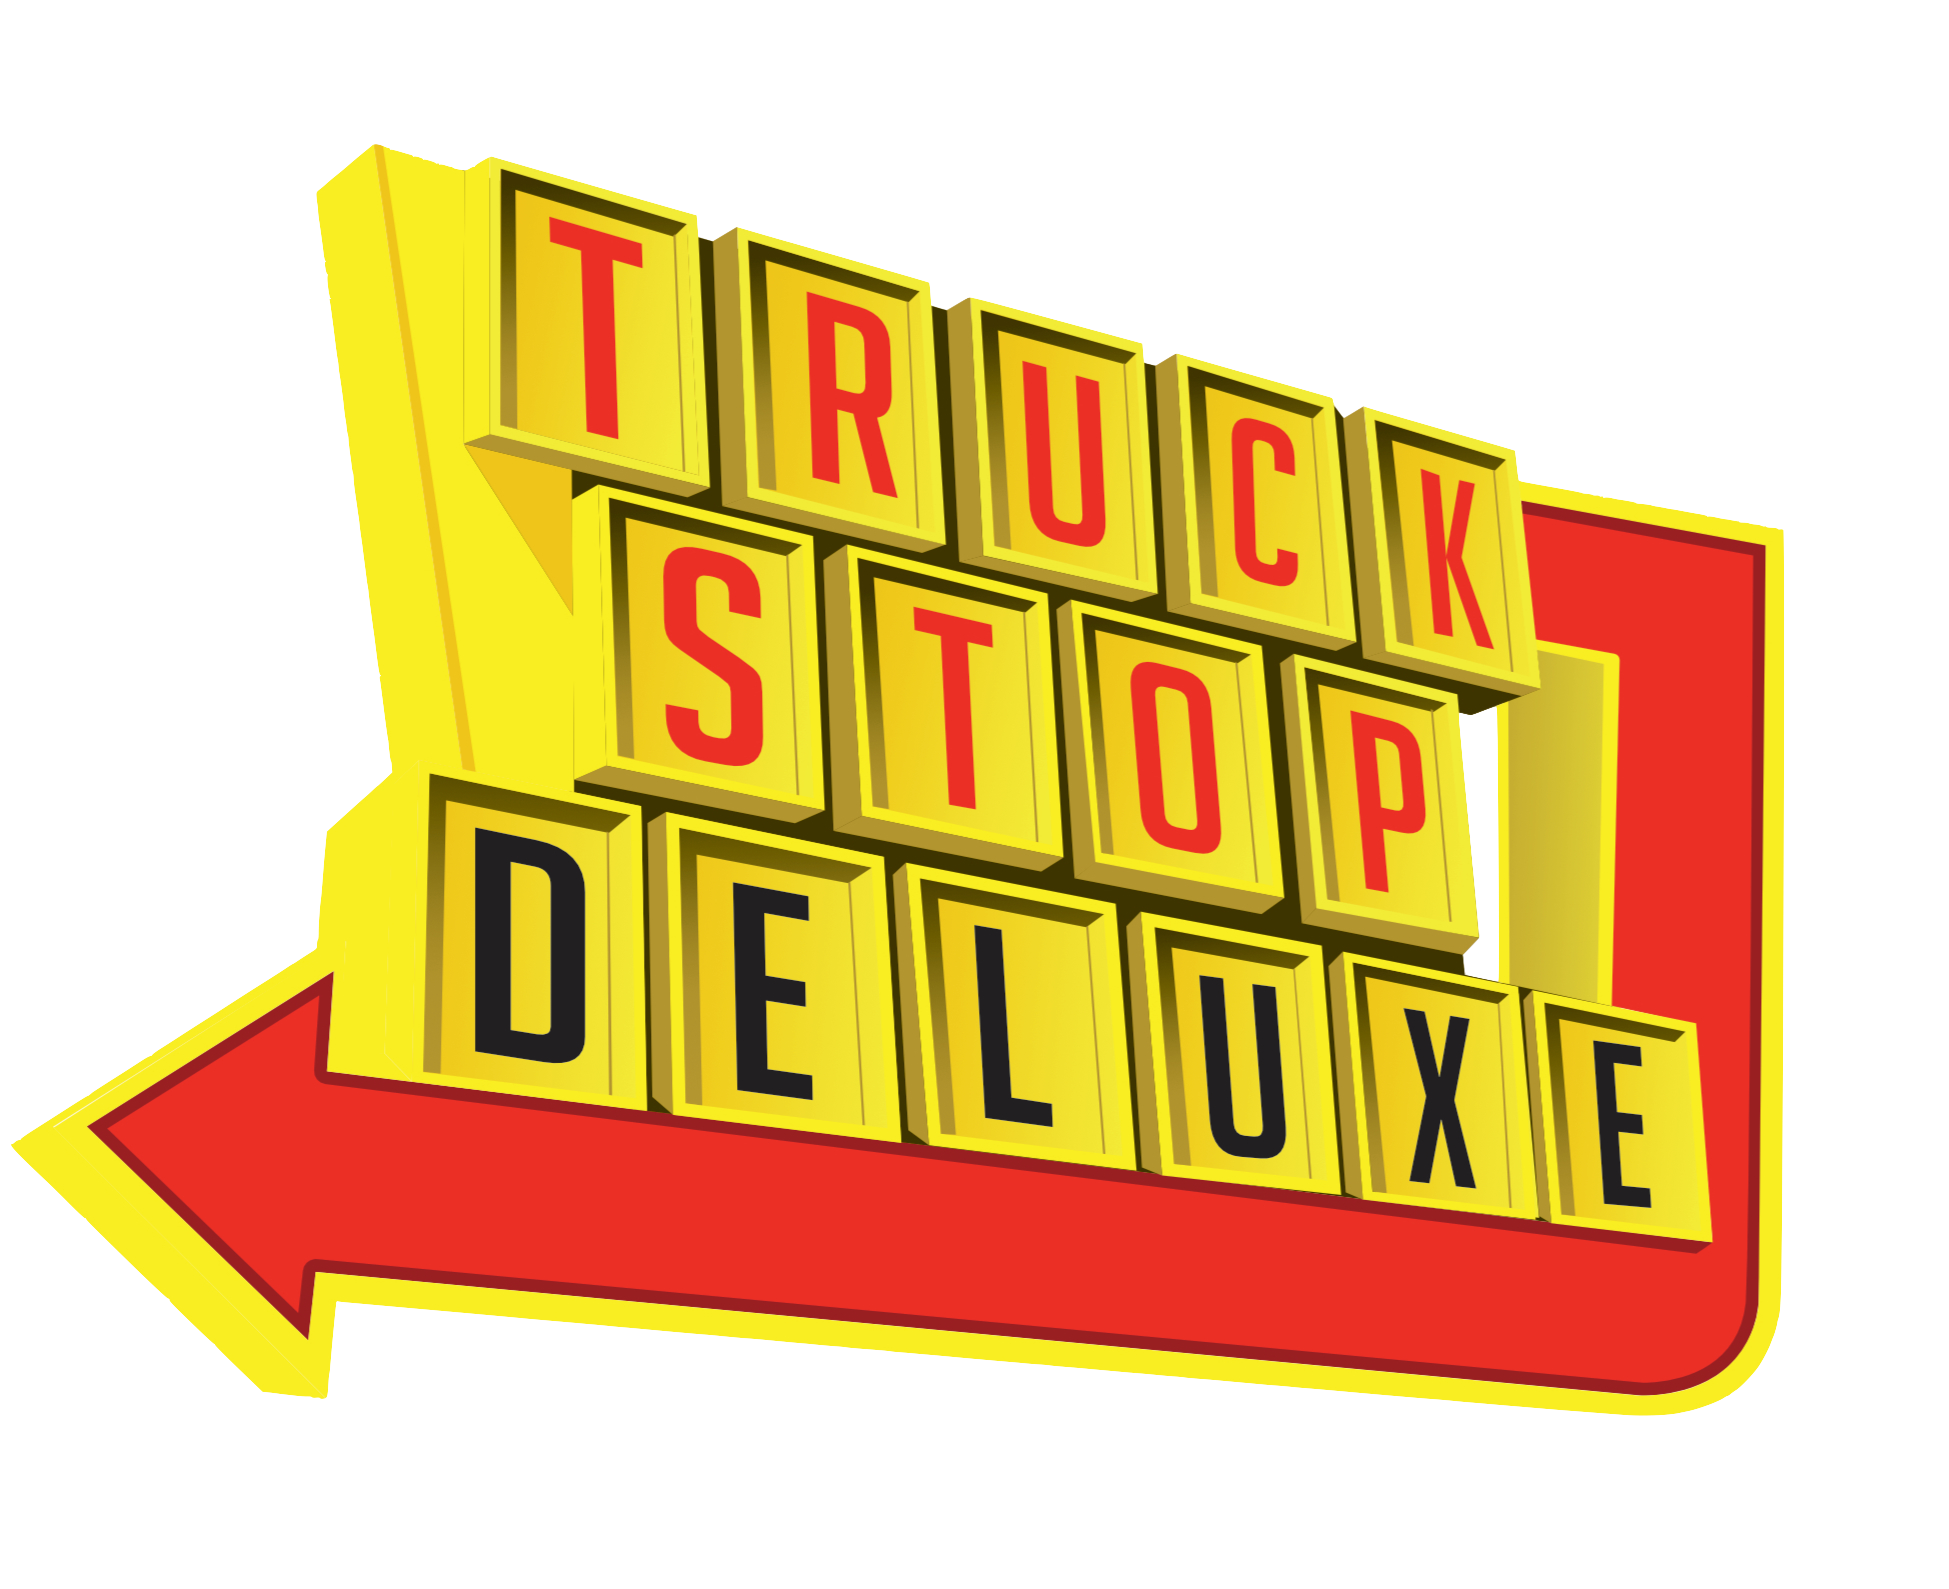 Truck Stop Deluxe